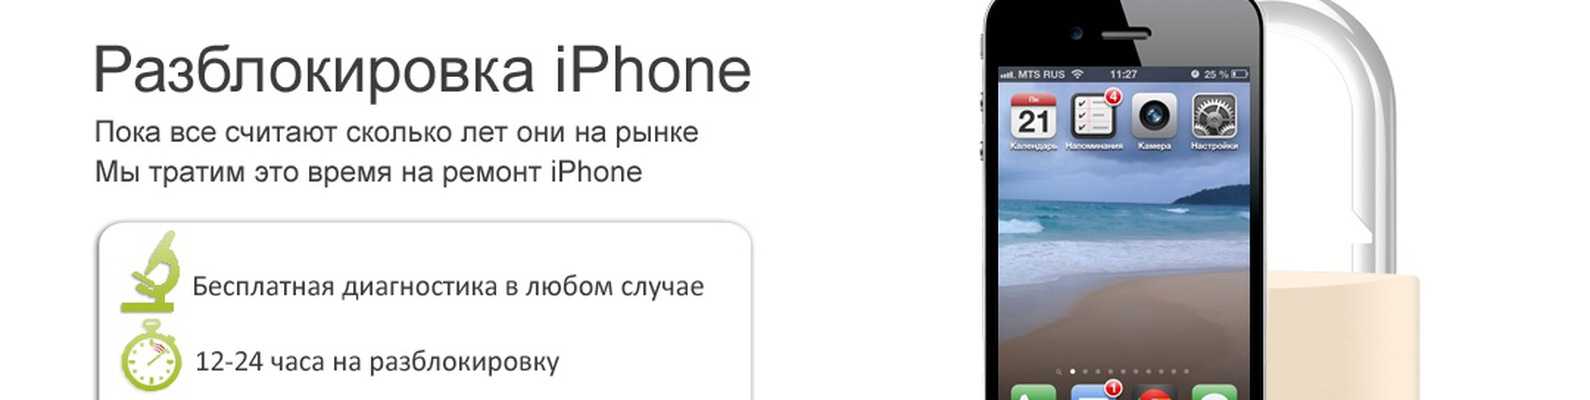 Face id в iphone x: что это, как настроить и можно ли взломать?